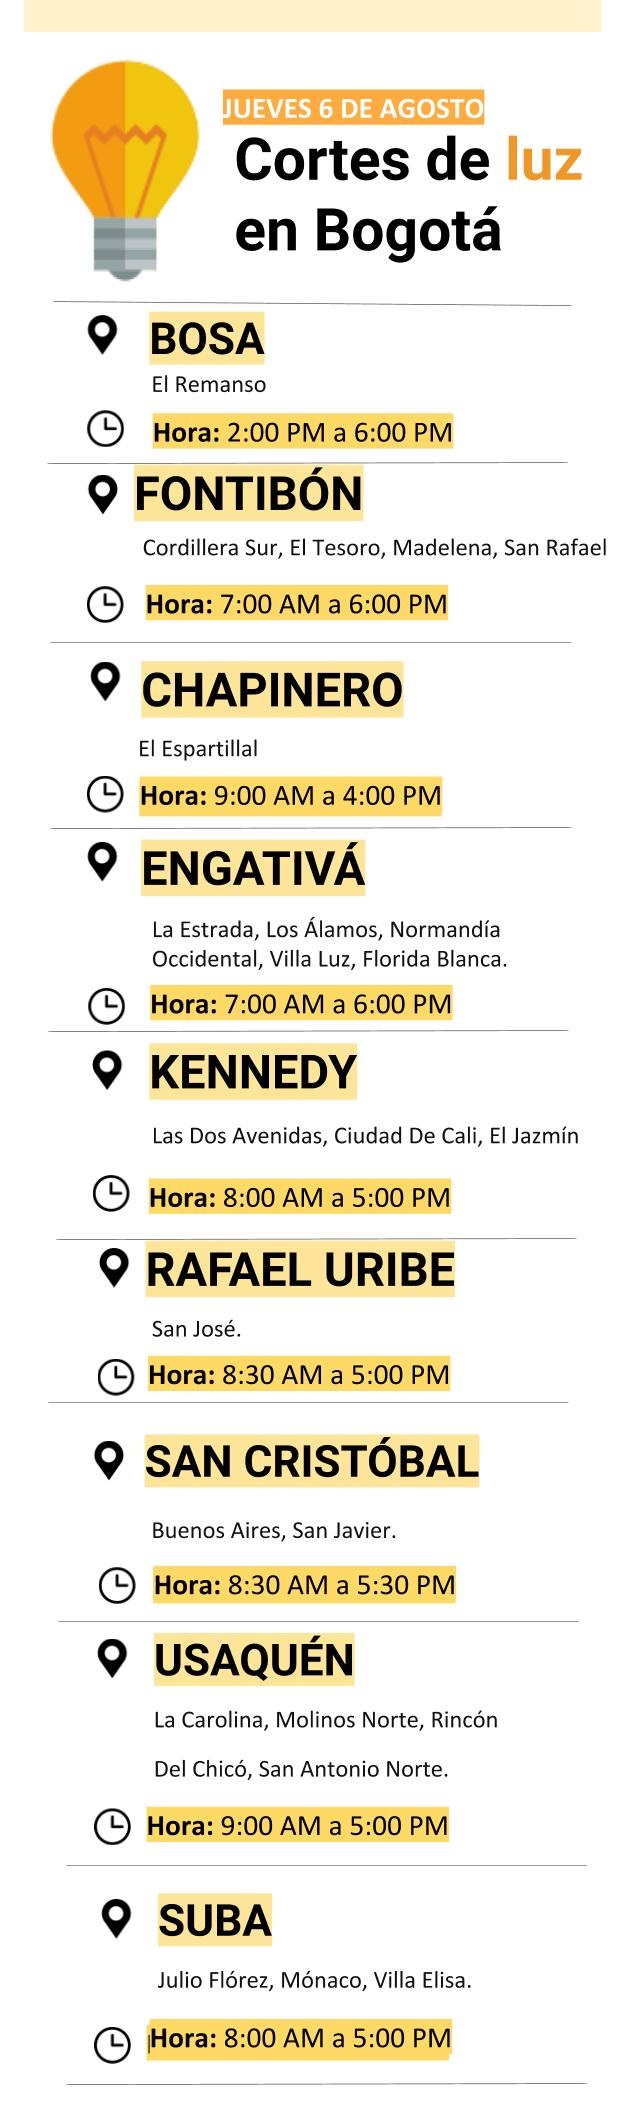 Cortes de luz en Bogotá para el jueves 6 de agosto